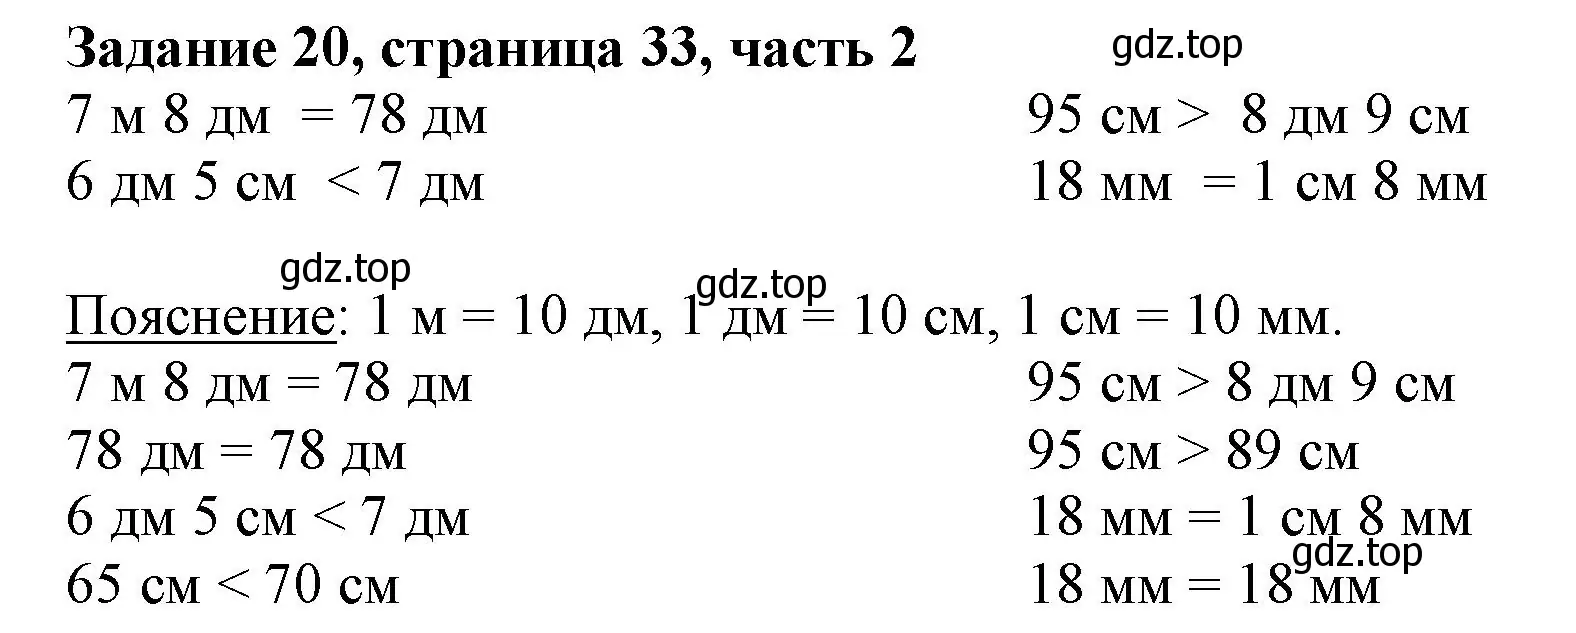 Решение номер 20 (страница 33) гдз по математике 3 класс Моро, Бантова, учебник 2 часть